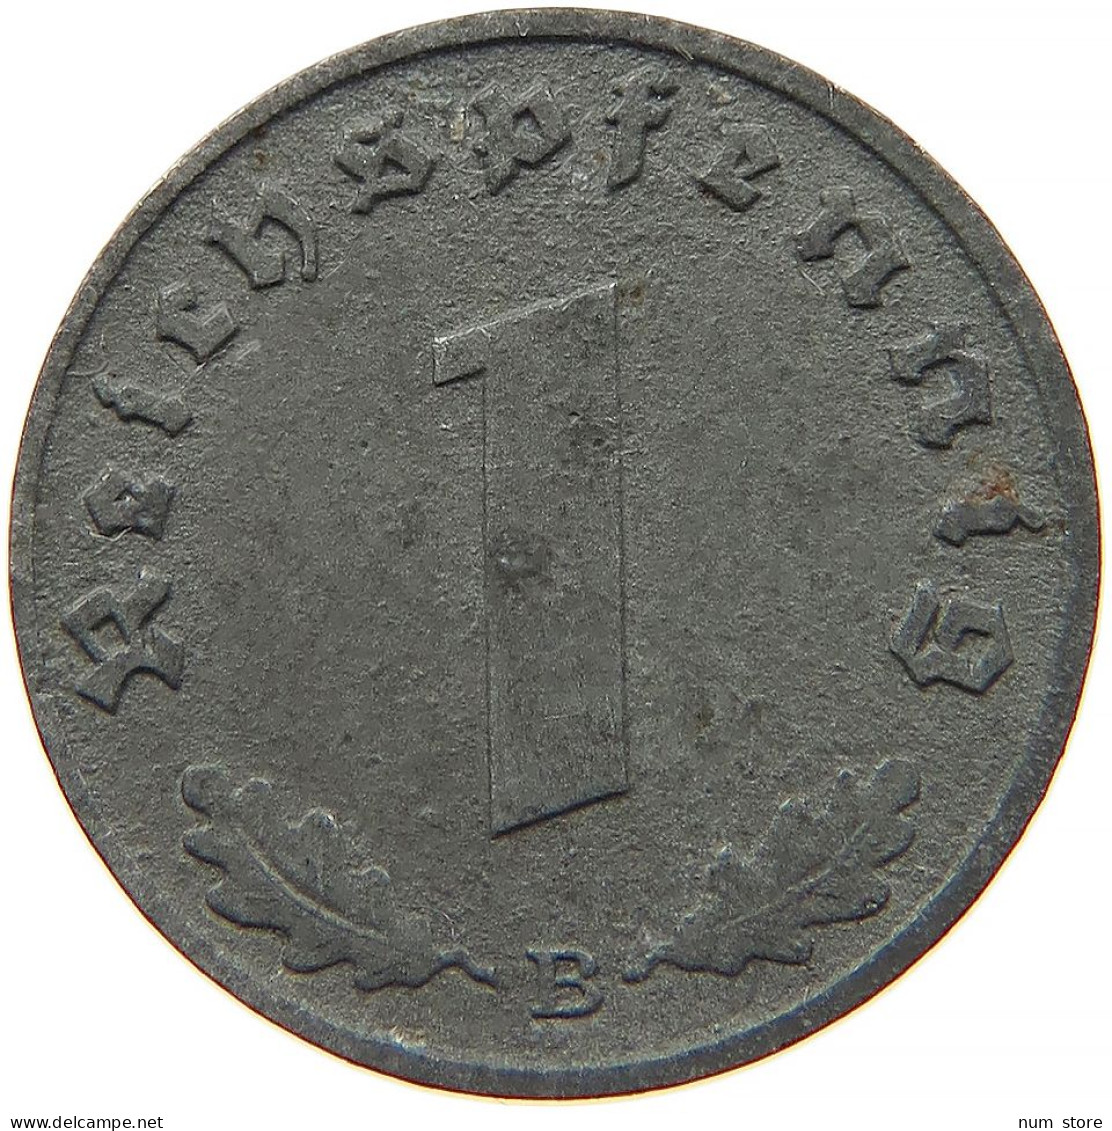 GERMANY 1 REICHSPFENNIG 1944 B #s091 1009 - 1 Reichspfennig